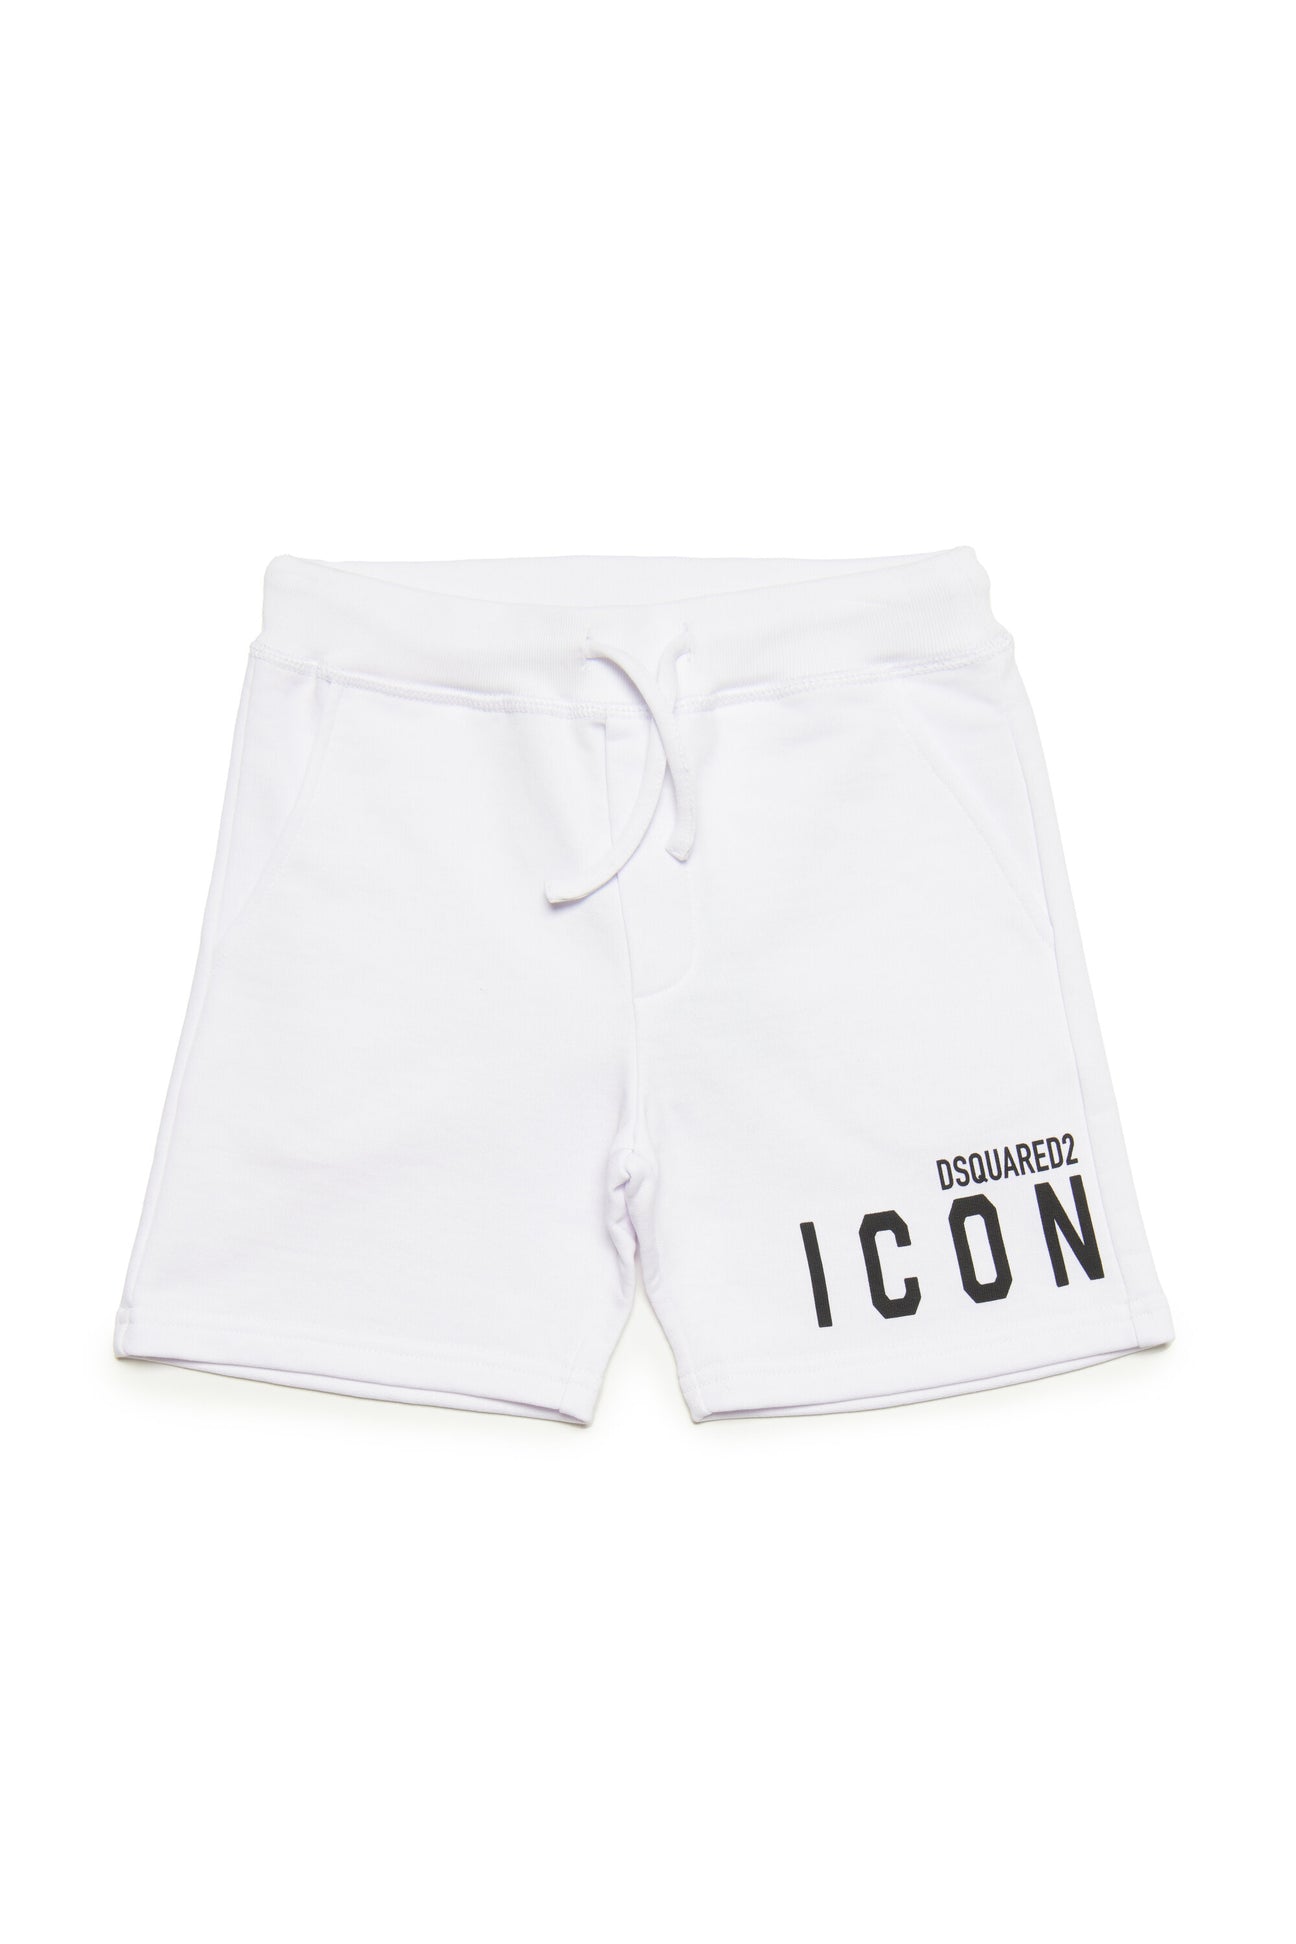 White cotton shorts with Icon logo 